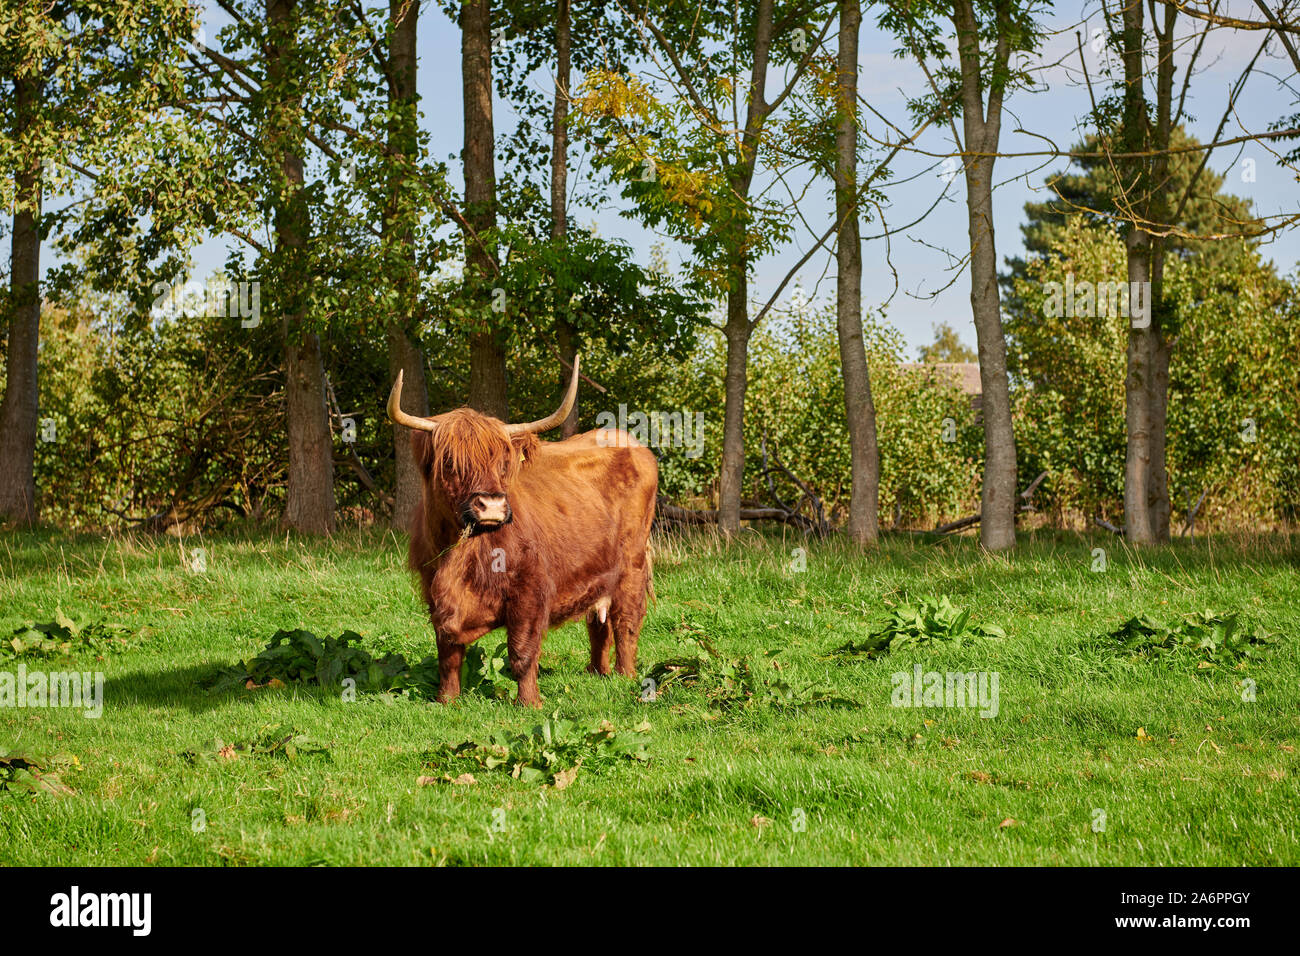 Highland Cattle or Kyloe on pasture, Waldfeucht, North Rhine-Westphalia, Germany Stock Photo